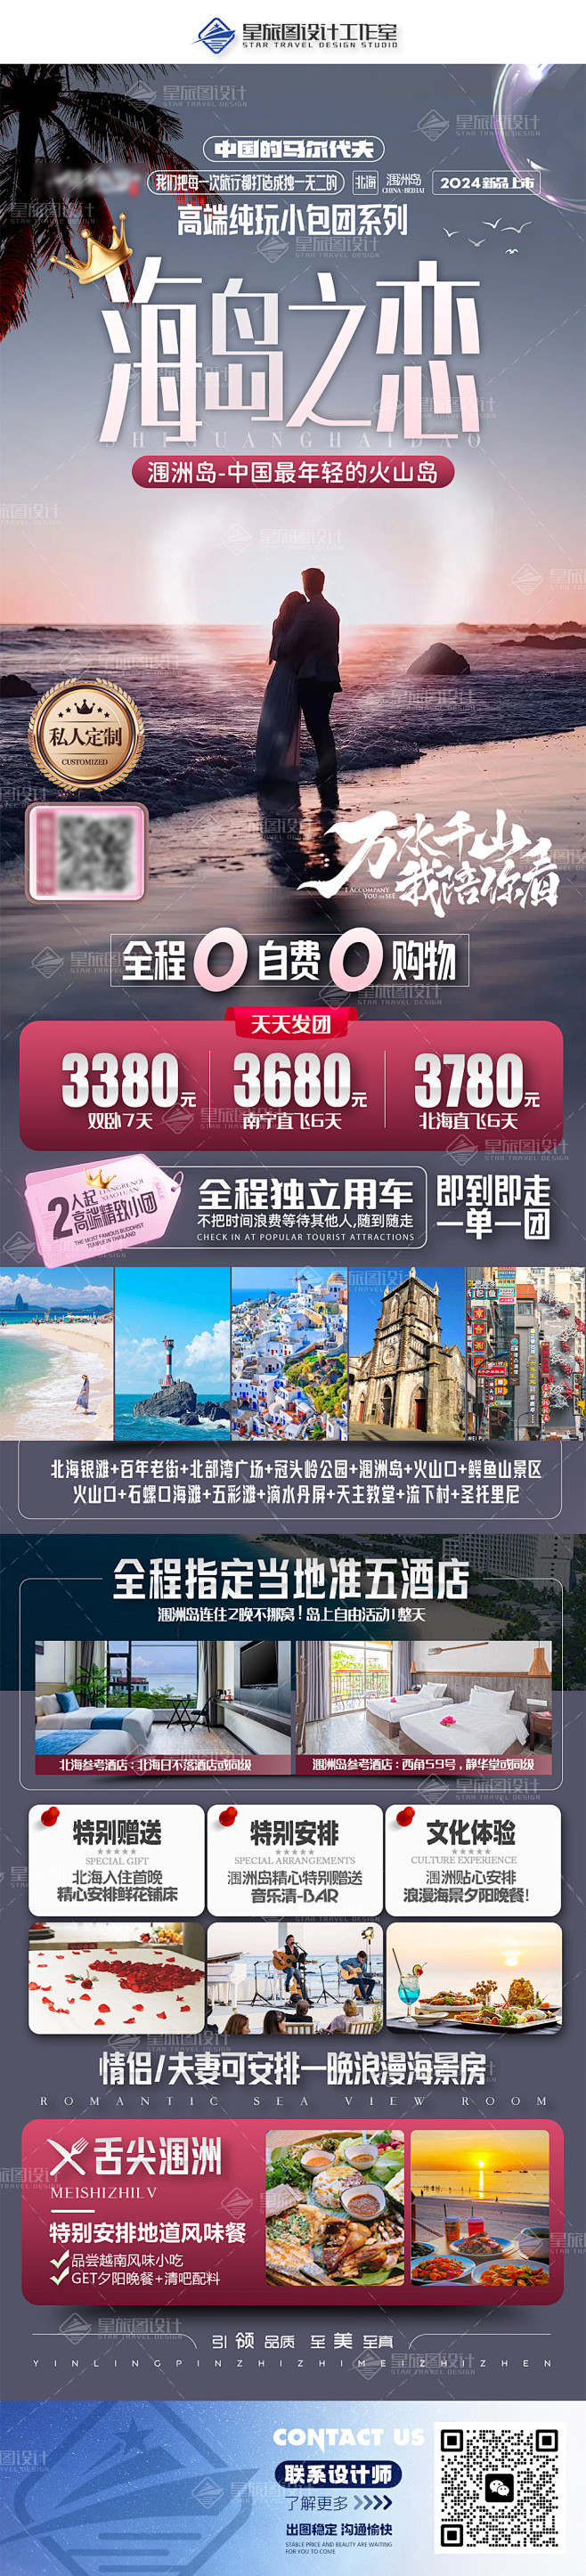 广西桂林北海旅游海报设计